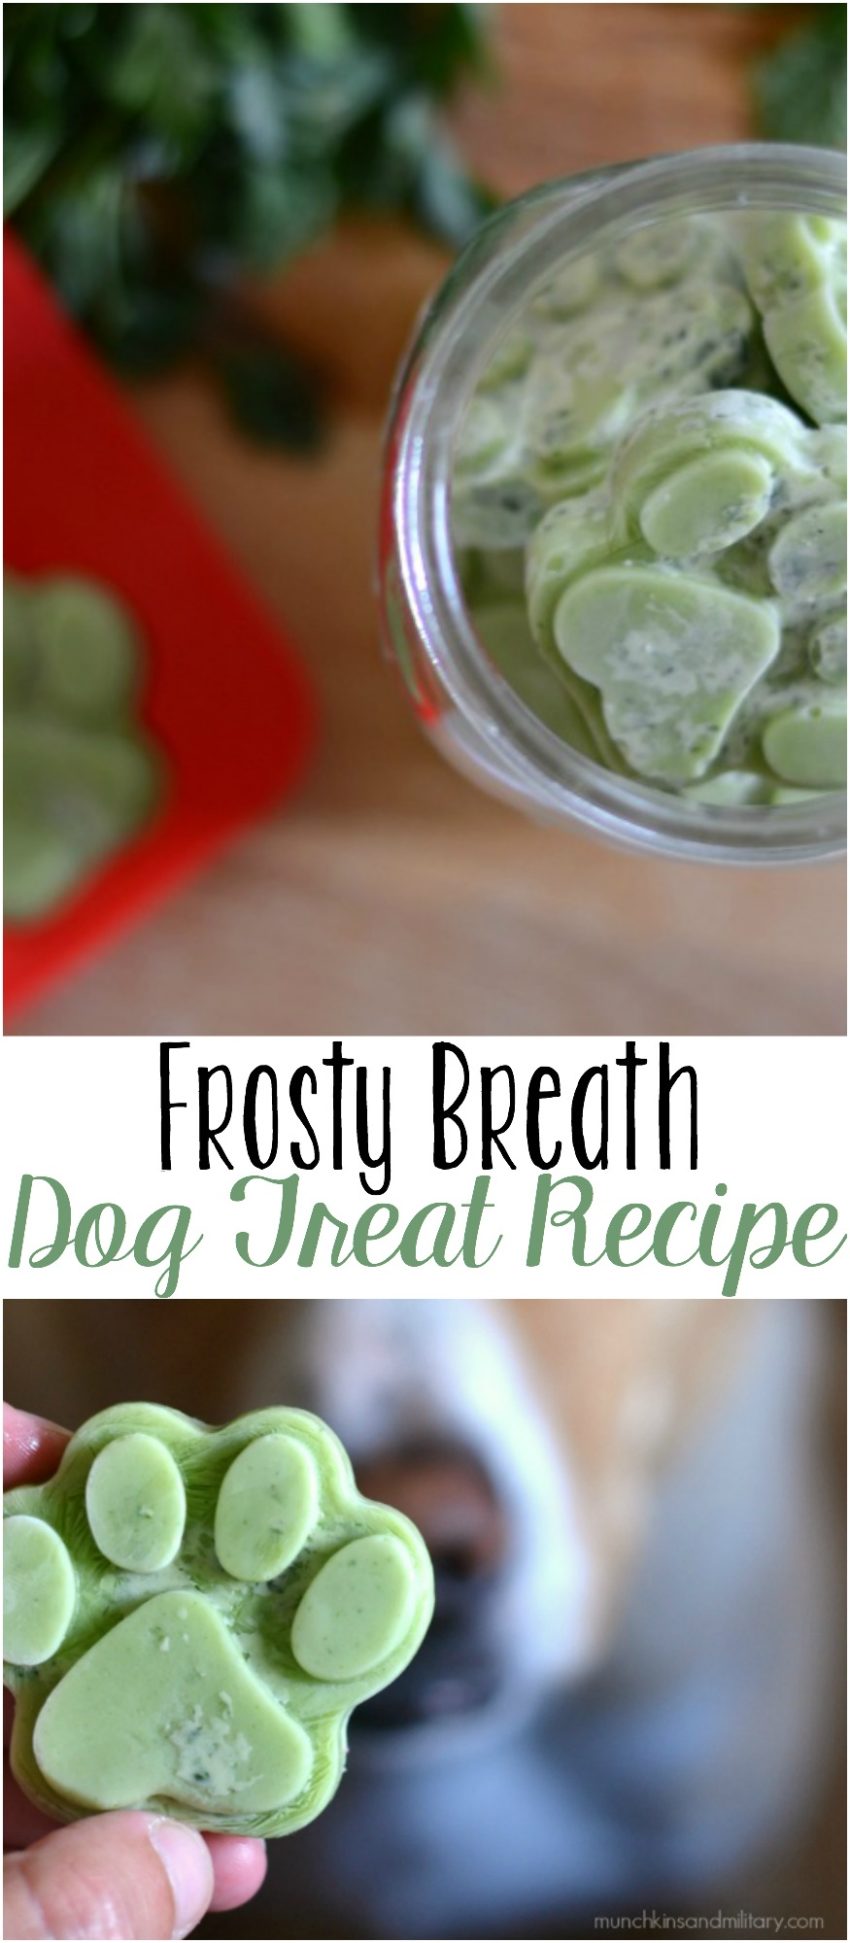 Frosty breath homemade dog treat recipe